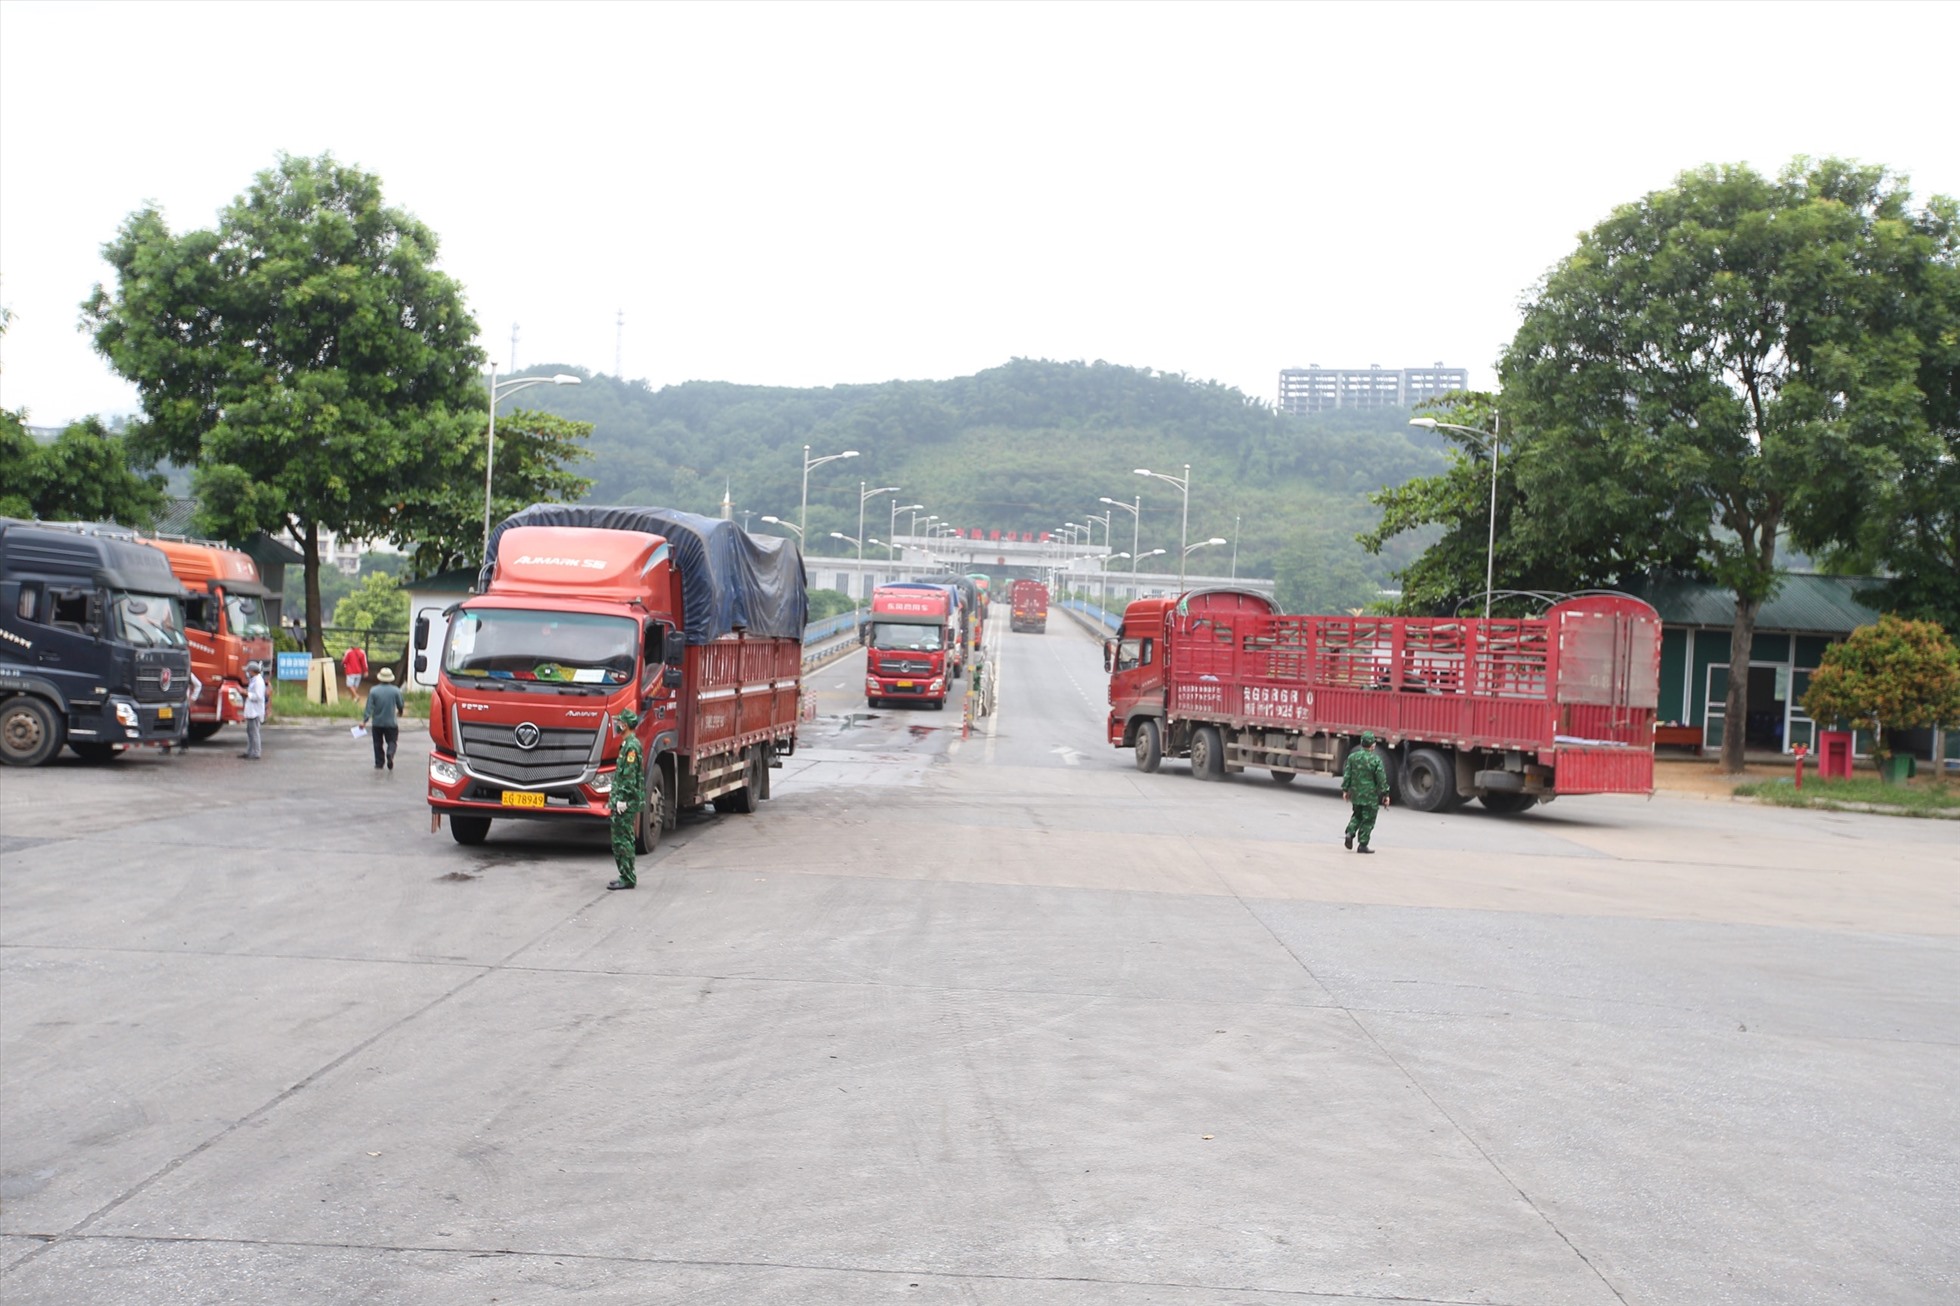 Đồn biên phòng Cửa khẩu quốc tế Lào Cai bổ sung thêm quân số đầy đủ cho các trạm cửa khẩu và phân công các vị trí công tác để chuẩn bị đón các đoàn khách đầu tiên xuất nhập cảnh qua cửa khẩu.